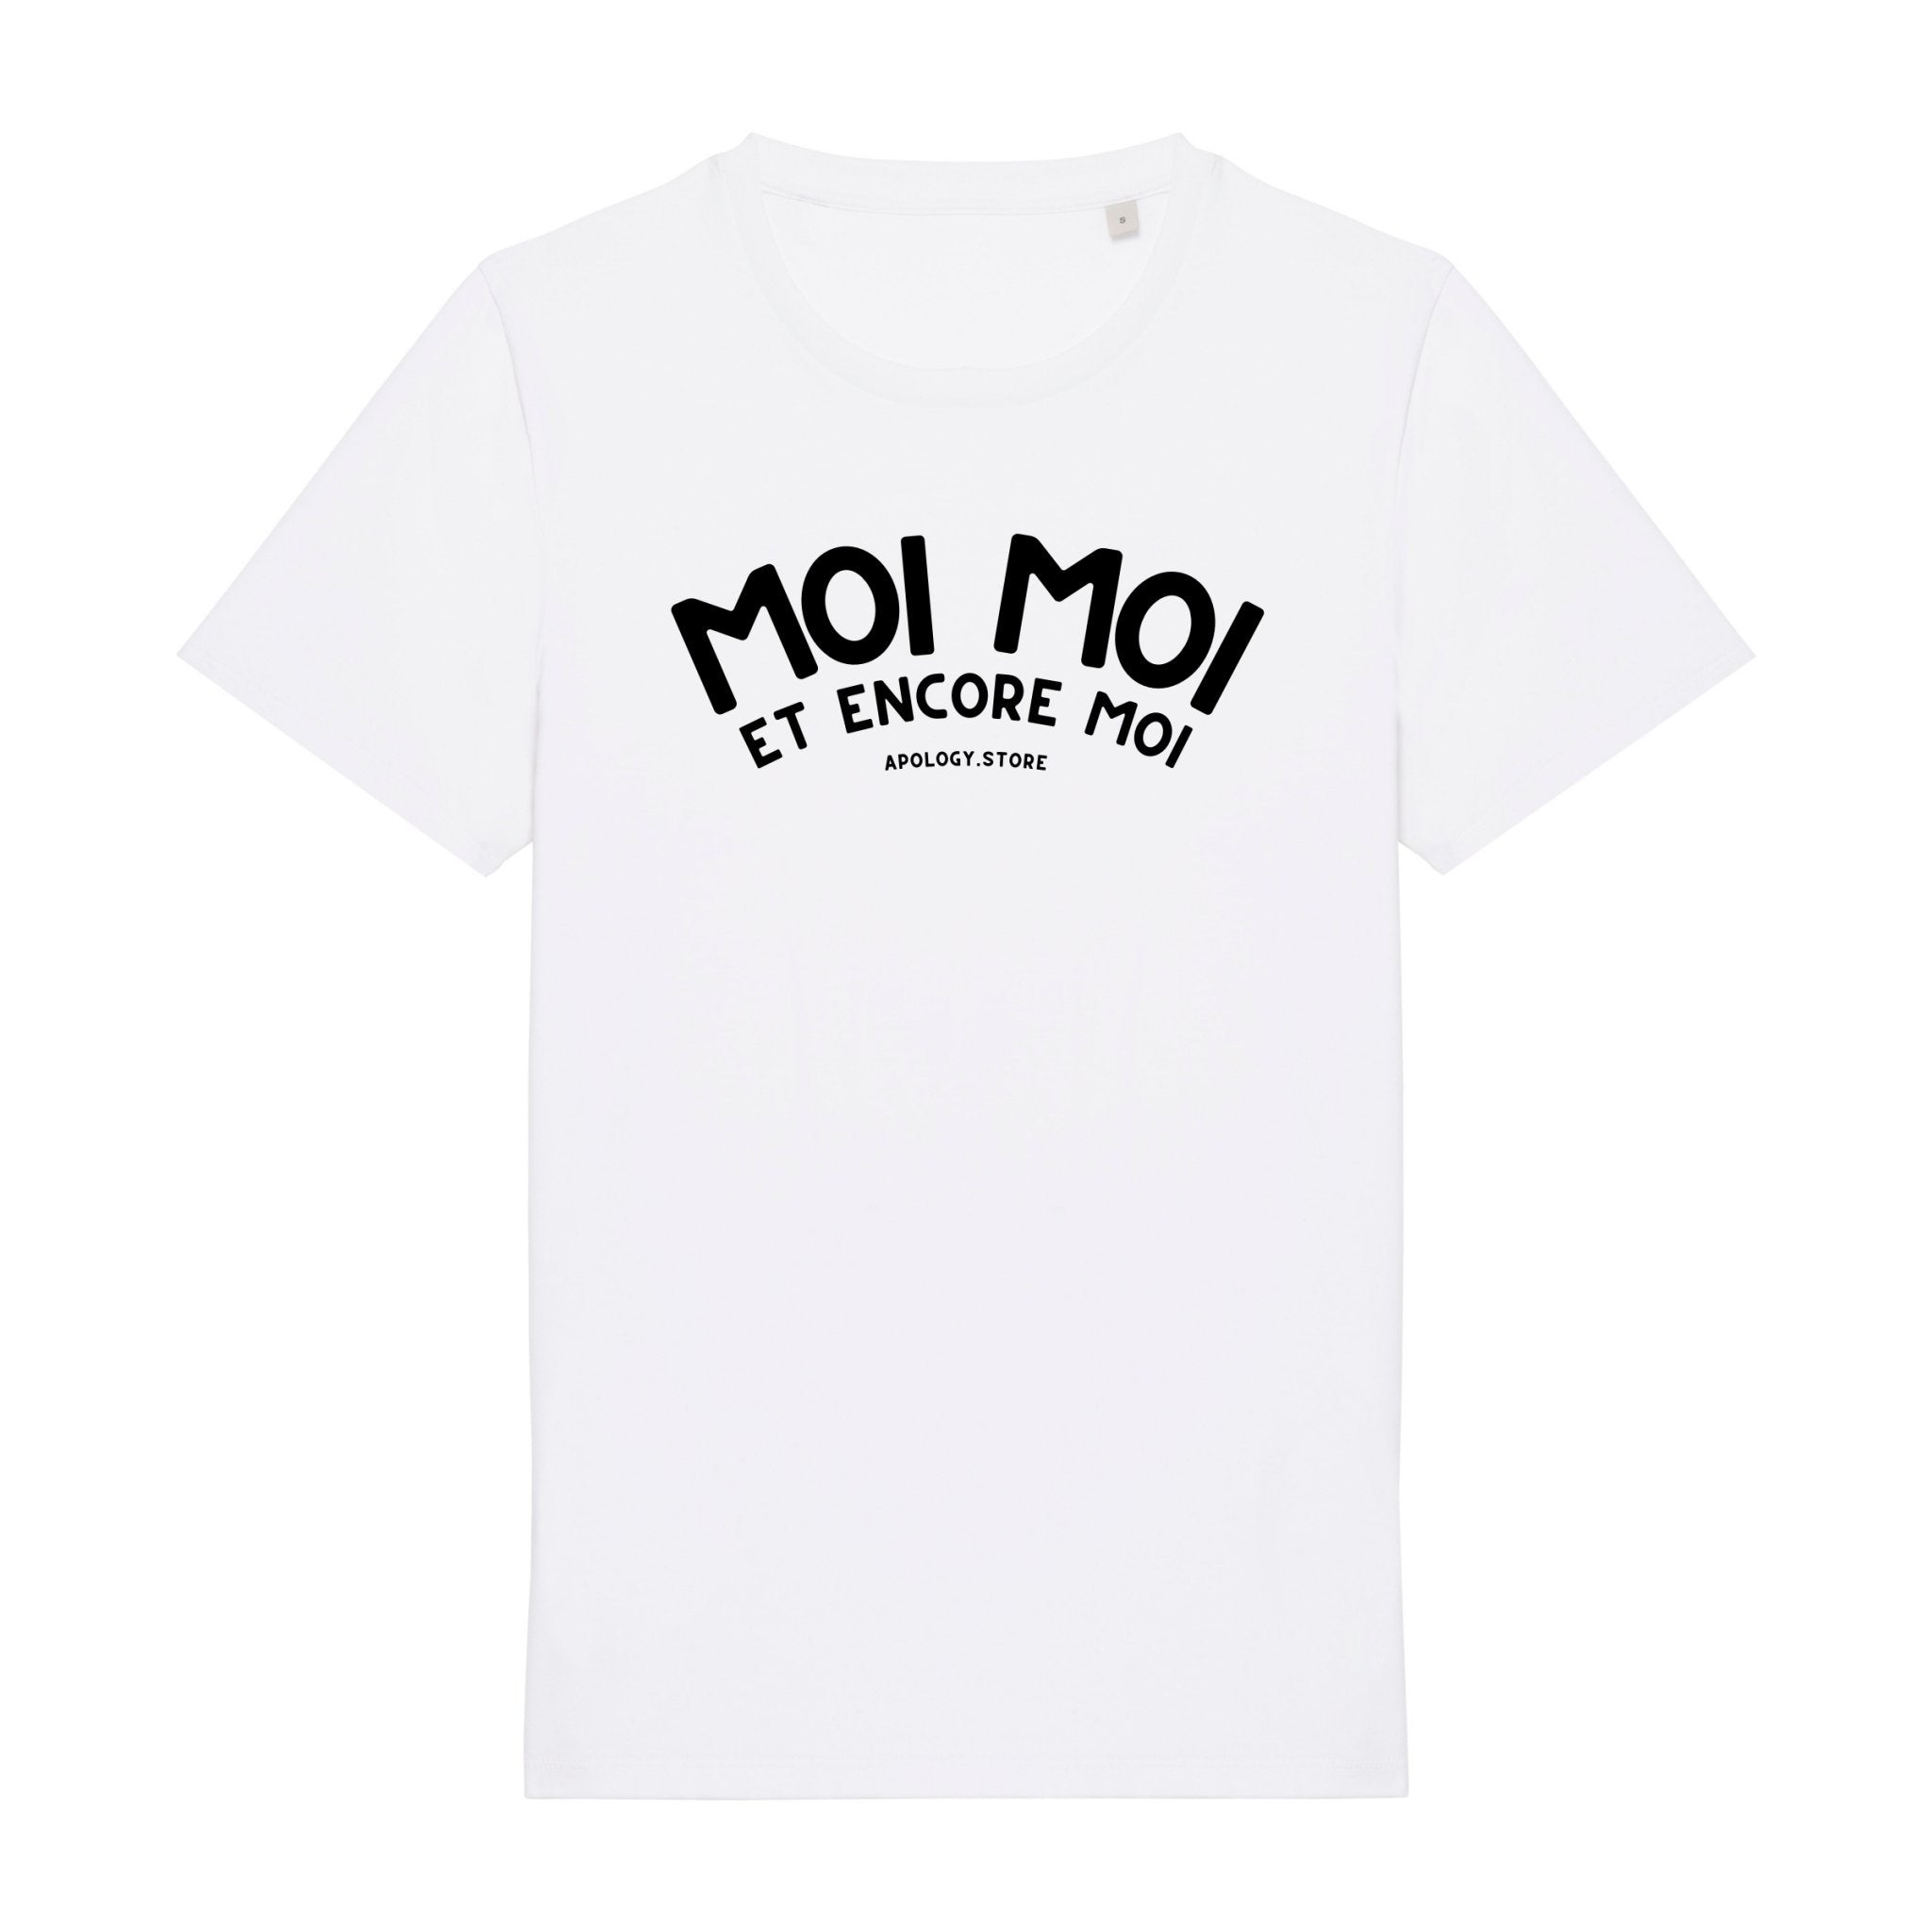 T-shirt Moi Moi et Encore Moi - Fabriqué au Portugal XS Blanc - Imprimé en France